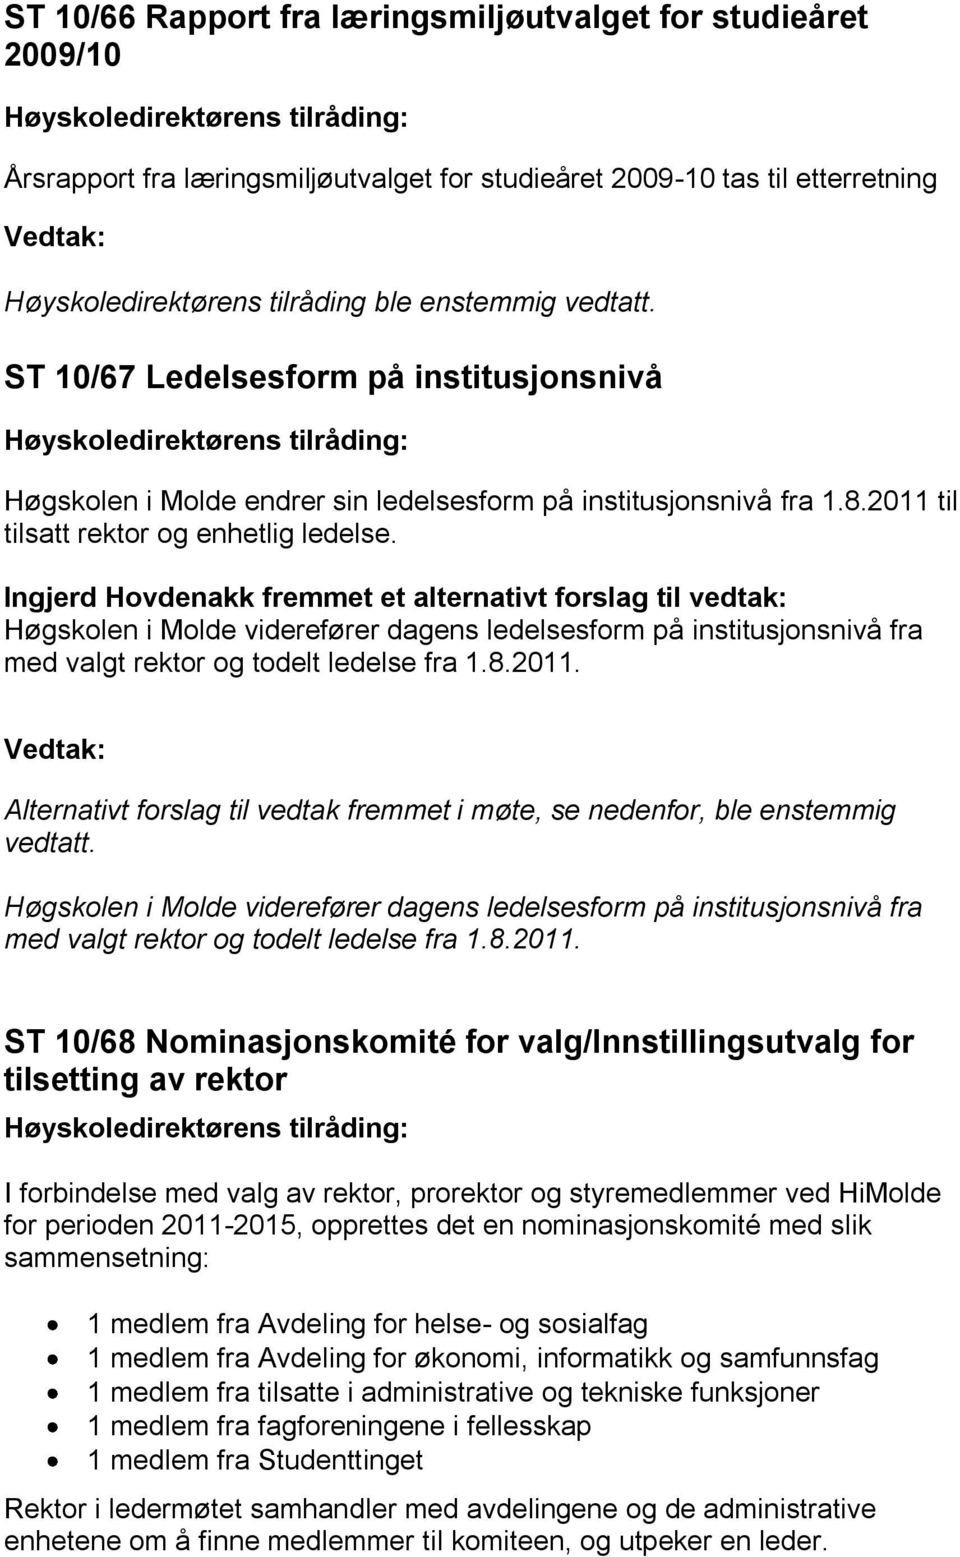 Ingjerd Hovdenakk fremmet et alternativt forslag til vedtak: Høgskolen i Molde viderefører dagens ledelsesform på institusjonsnivå fra med valgt rektor og todelt ledelse fra 1.8.2011.